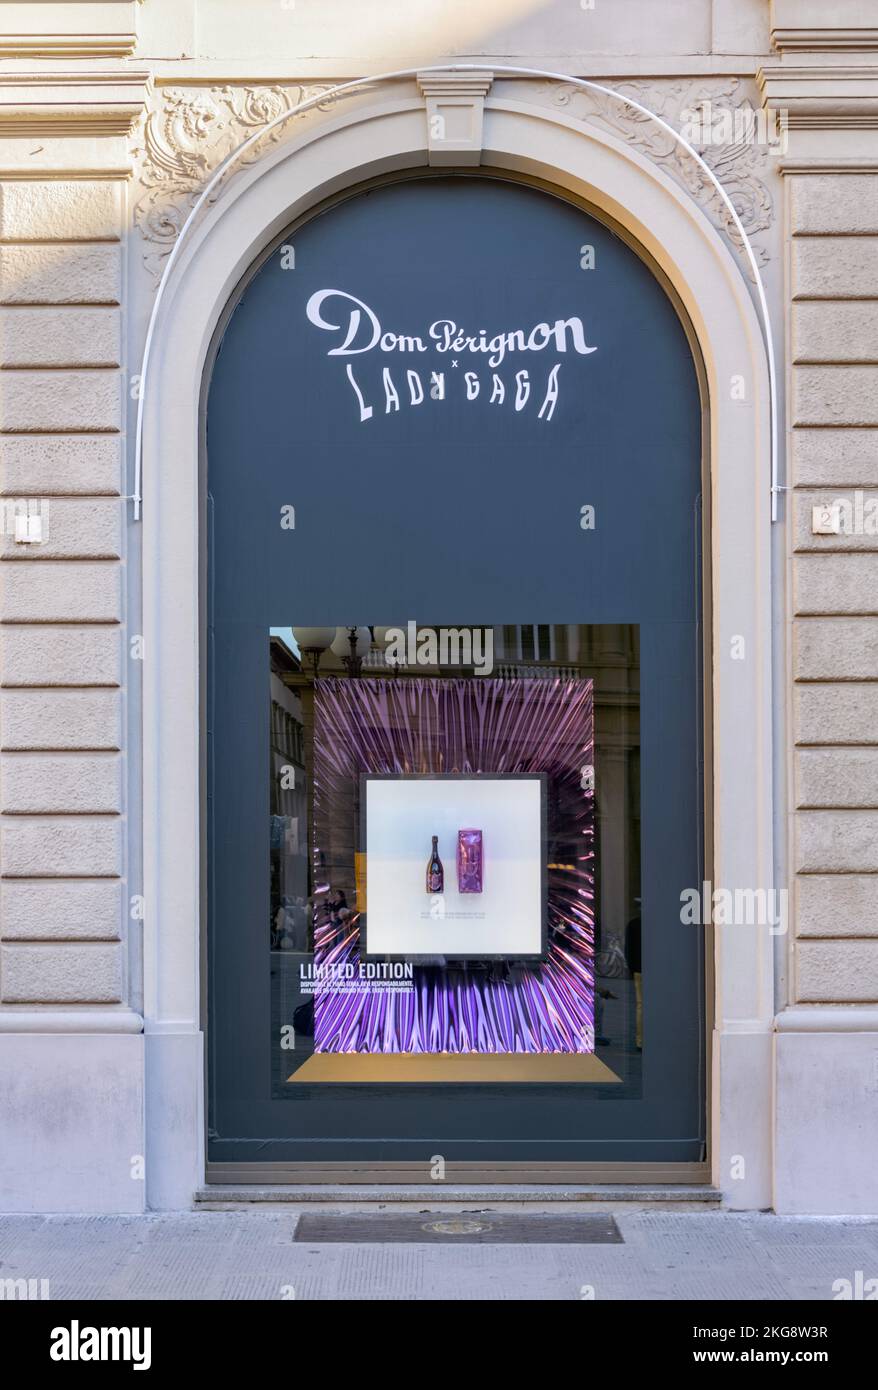 Dom Perignon Edition limitée champagne Lady Gaga publicité sur la vitrine de la boutique, Florence, Italie Banque D'Images